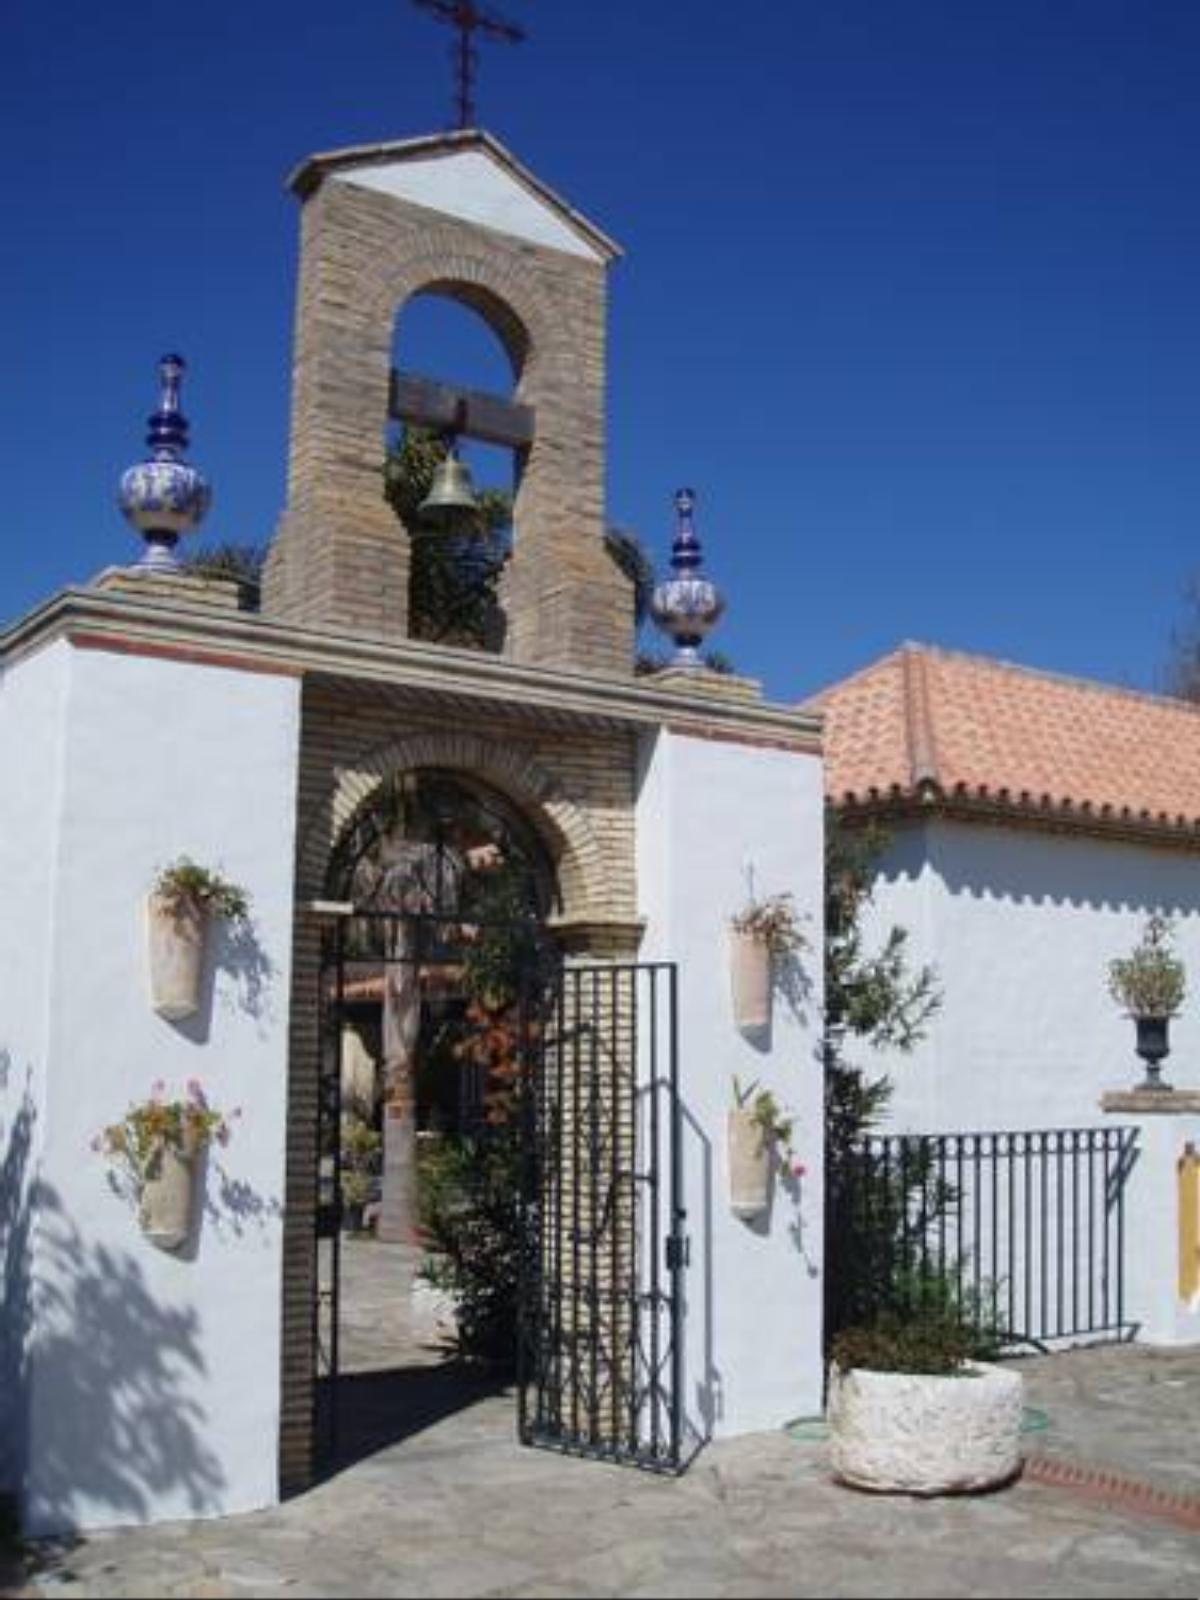 Cortijo Los Monteros Hotel Benalup Casas Viejas Spain